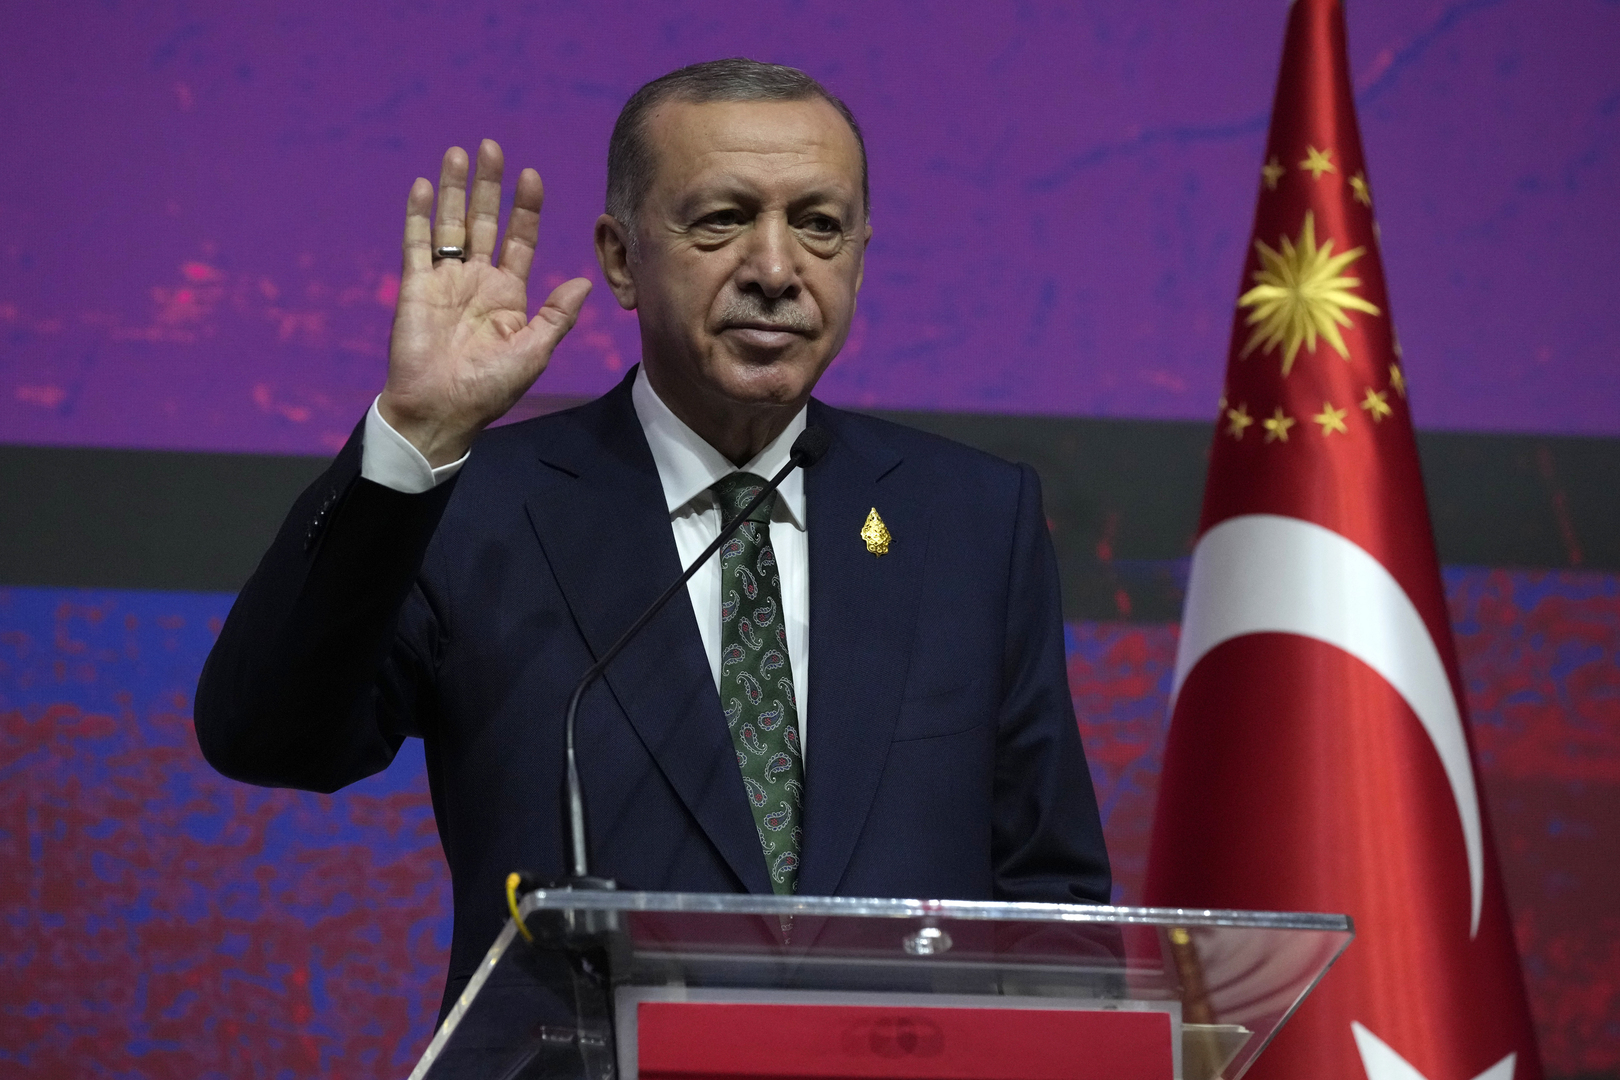 أردوغان: عدد اللاجئين العائدين إلى سوريا سيزداد